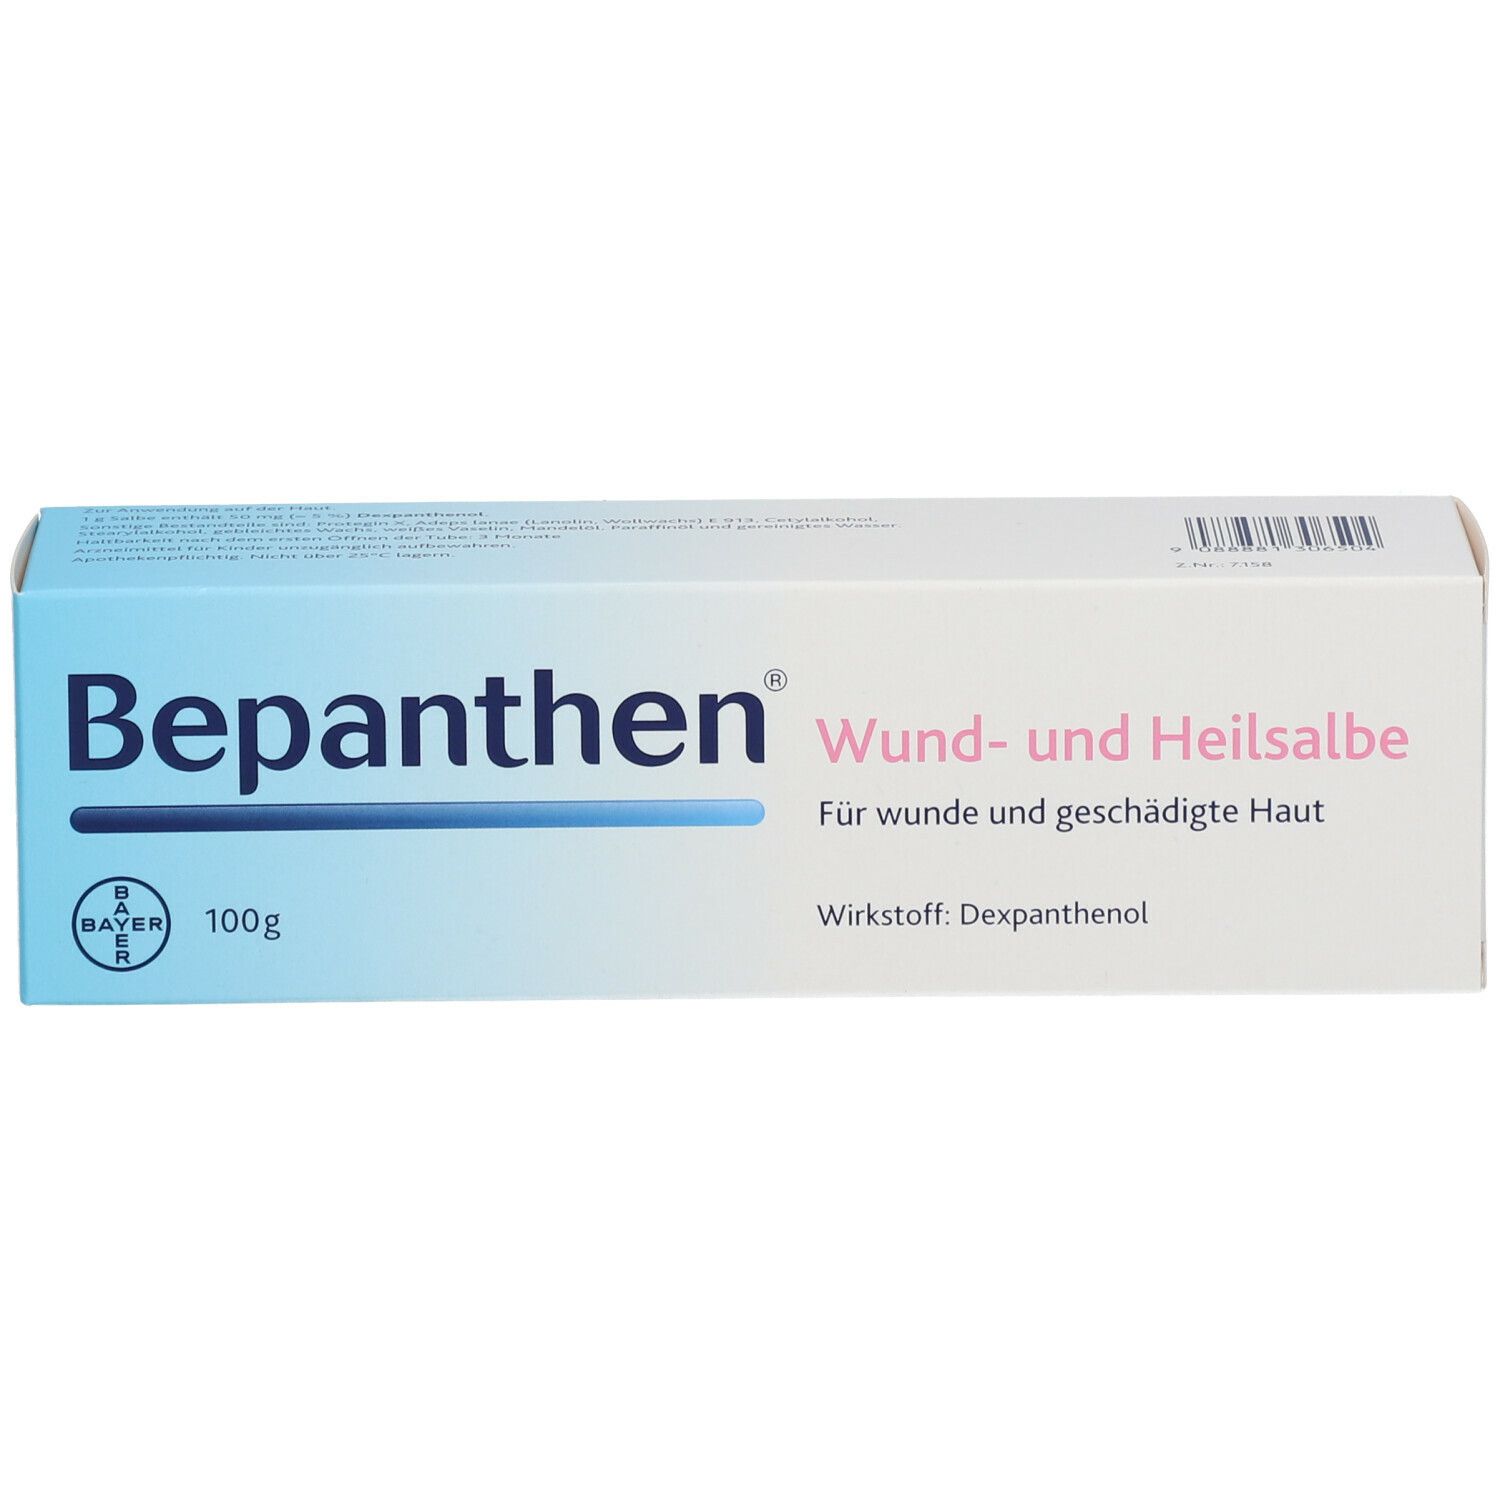 Bepanthen® Wund- und Heilsalbe